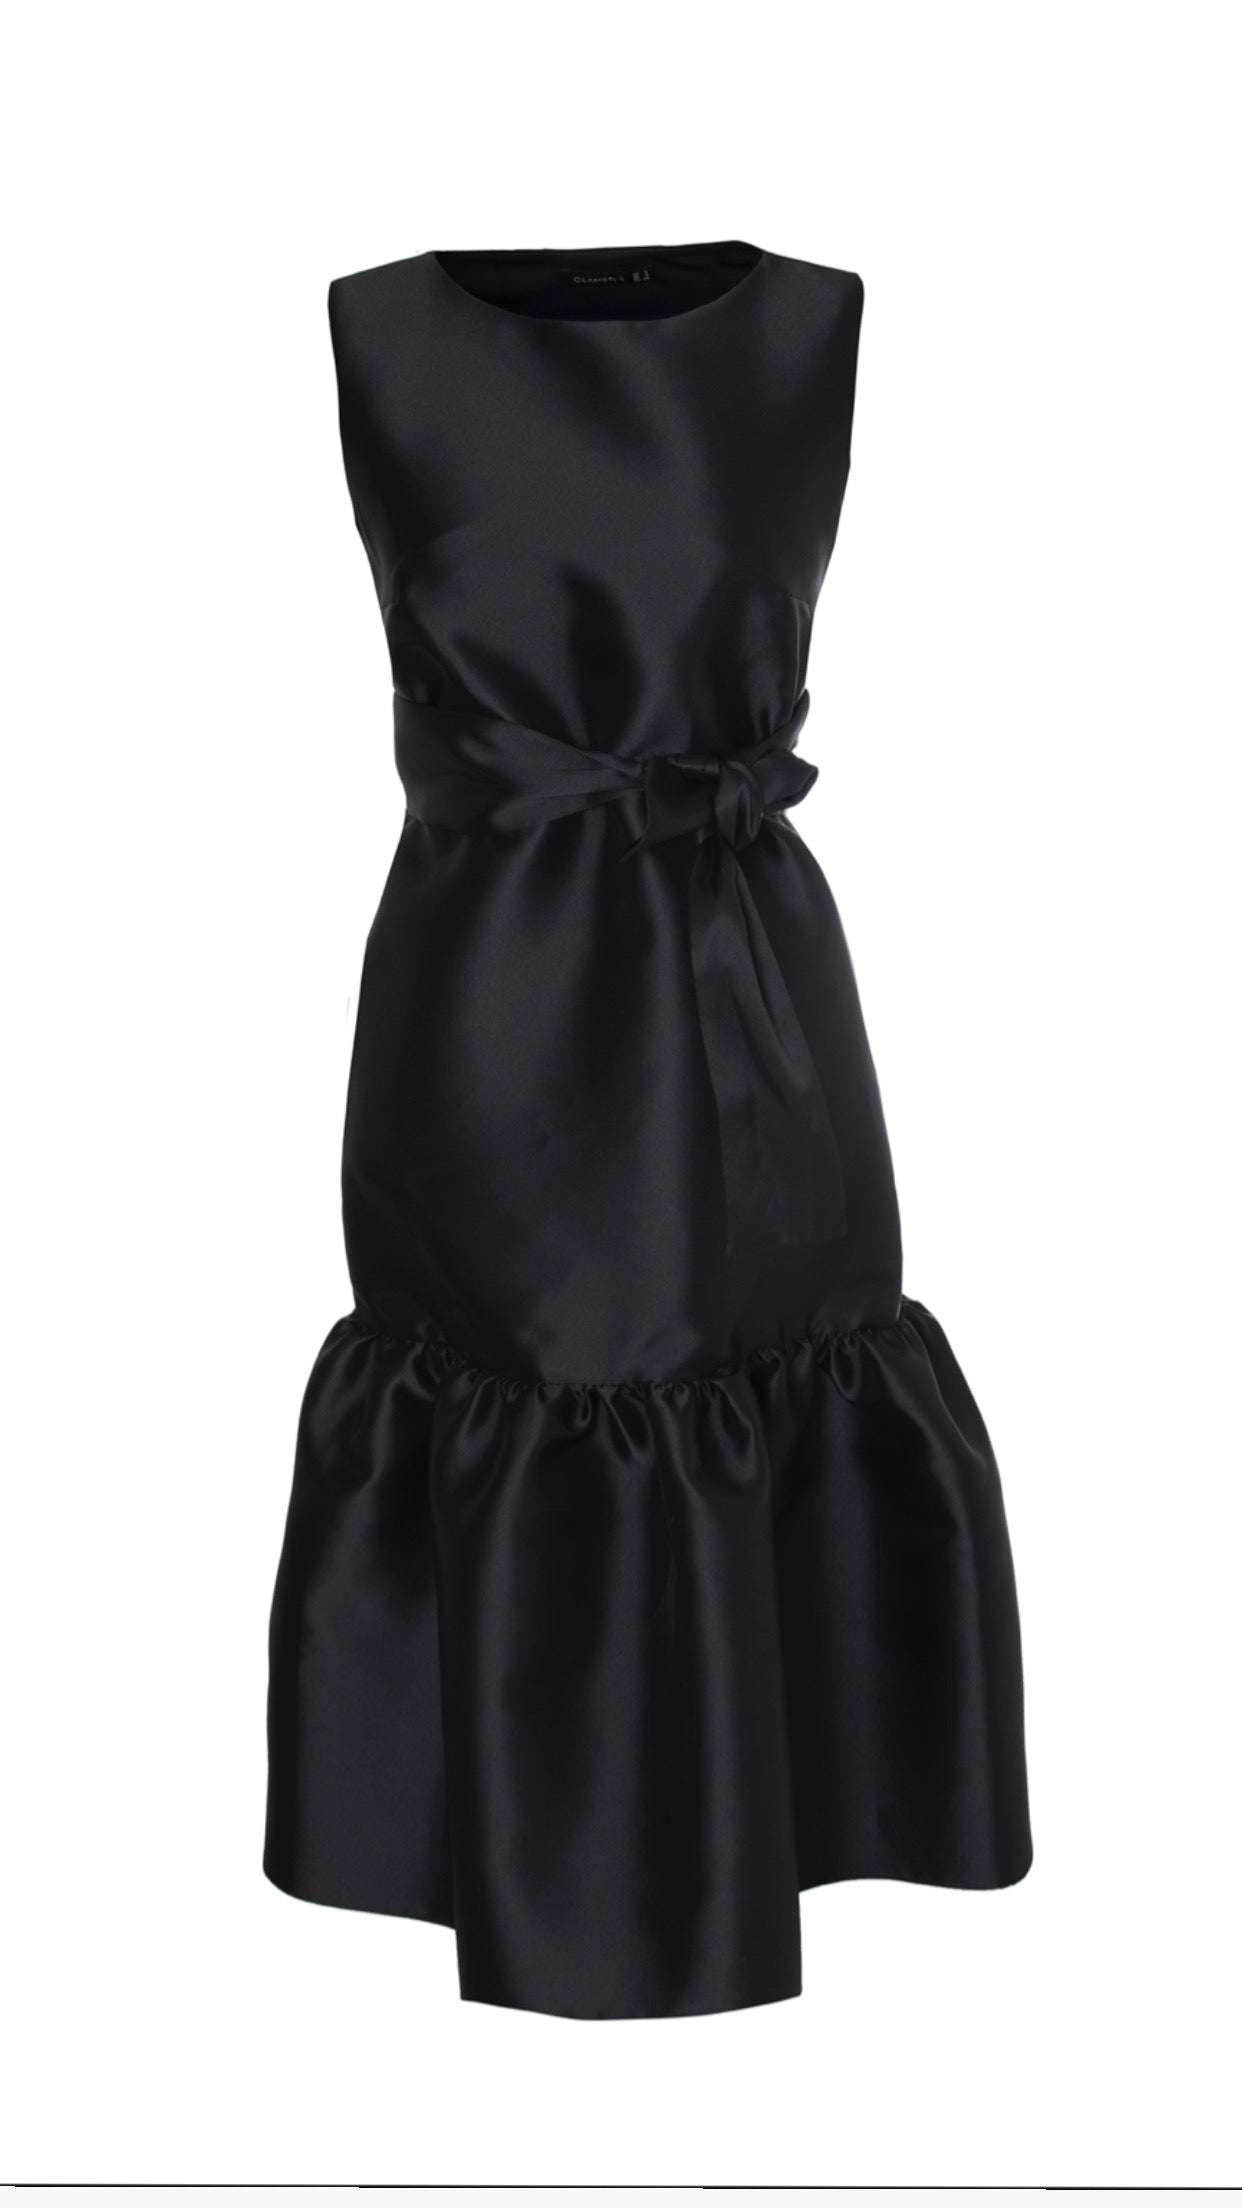 Lüks Kaliteli Elbise Modellerinden Black Dream Dress